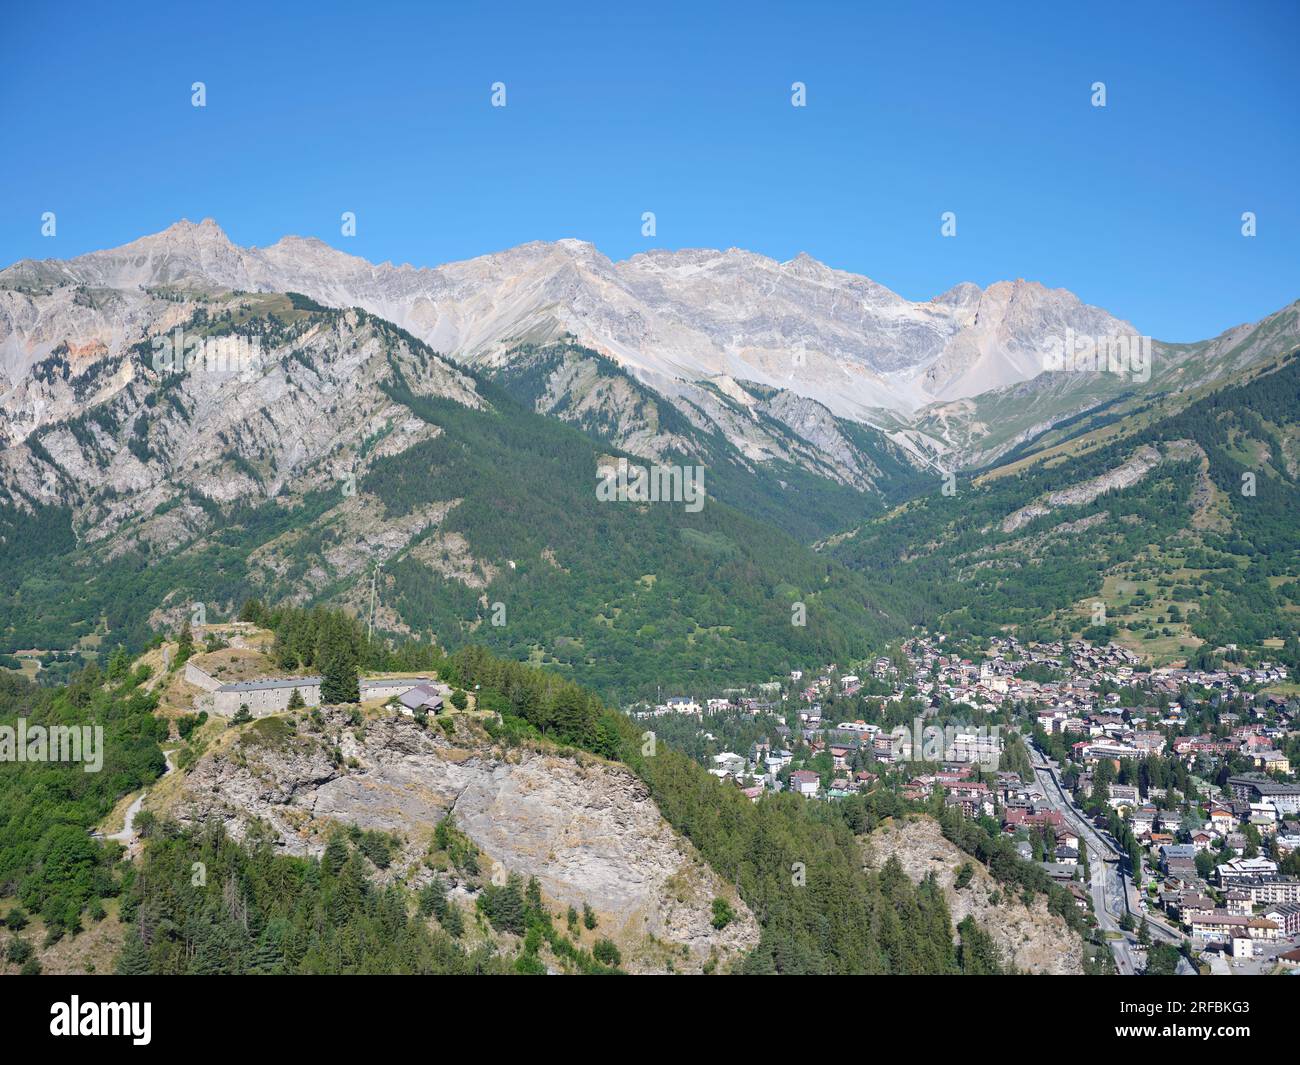 LUFTAUFNAHME. Die Stadt Bardonecchia im Susa-Tal mit Rocca Bernauda (3225m) in der Ferne und Bramafam-Fort auf der linken Seite. Piedmont, Italien. Stockfoto